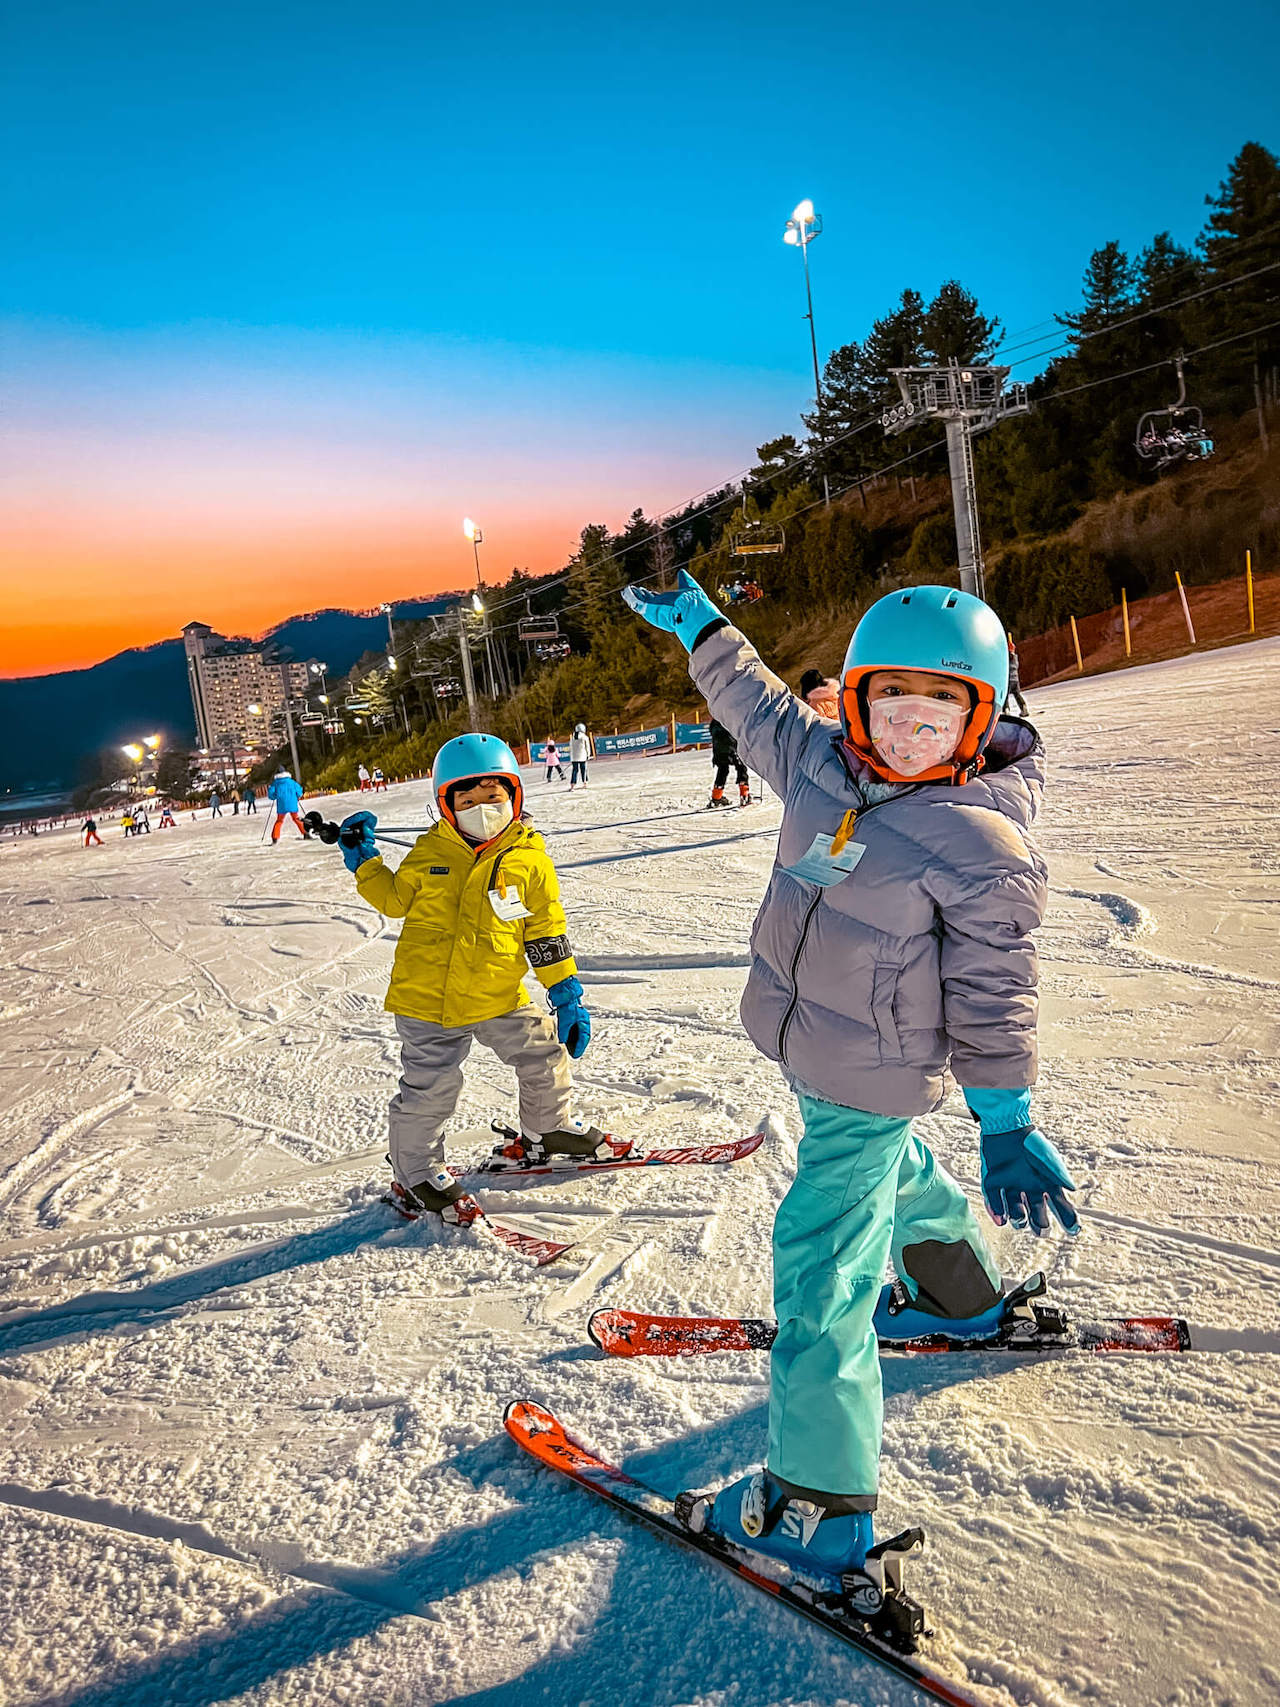 night skiing in korea